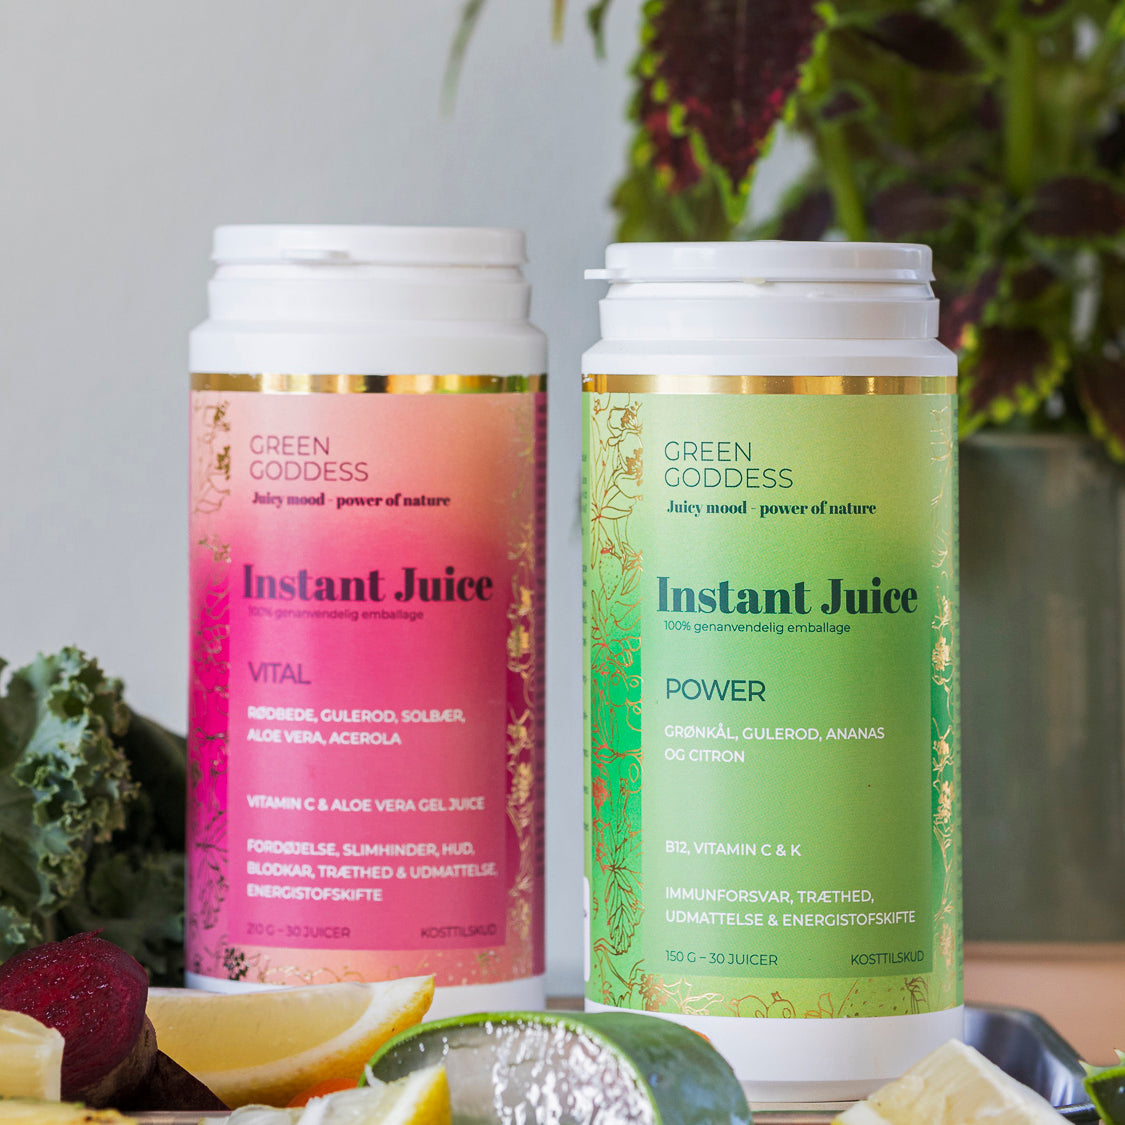 Billede af Ferie-pakken med Instant juice hos Green Goddess